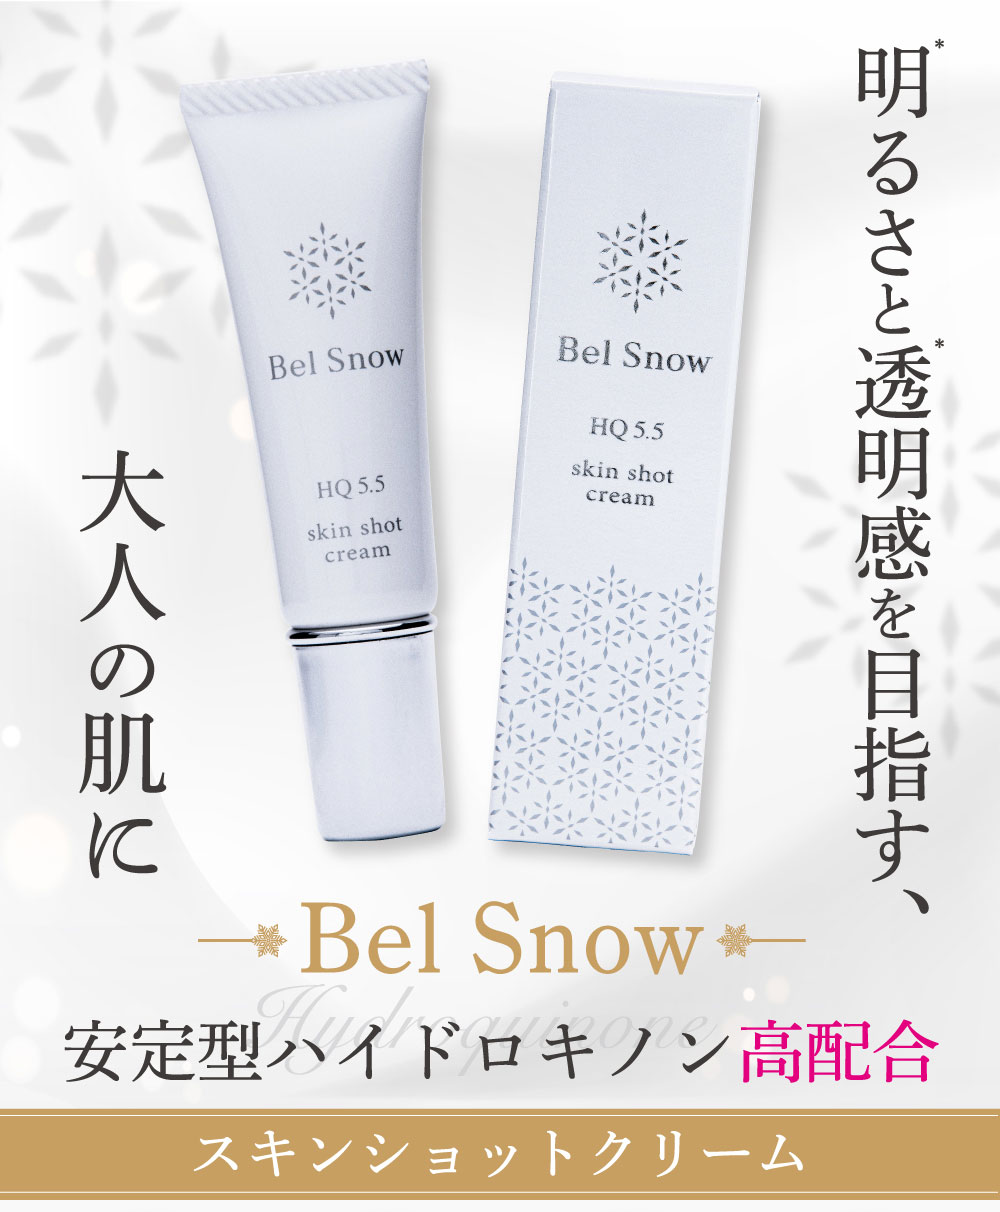 Bel Snowの商品説明画像